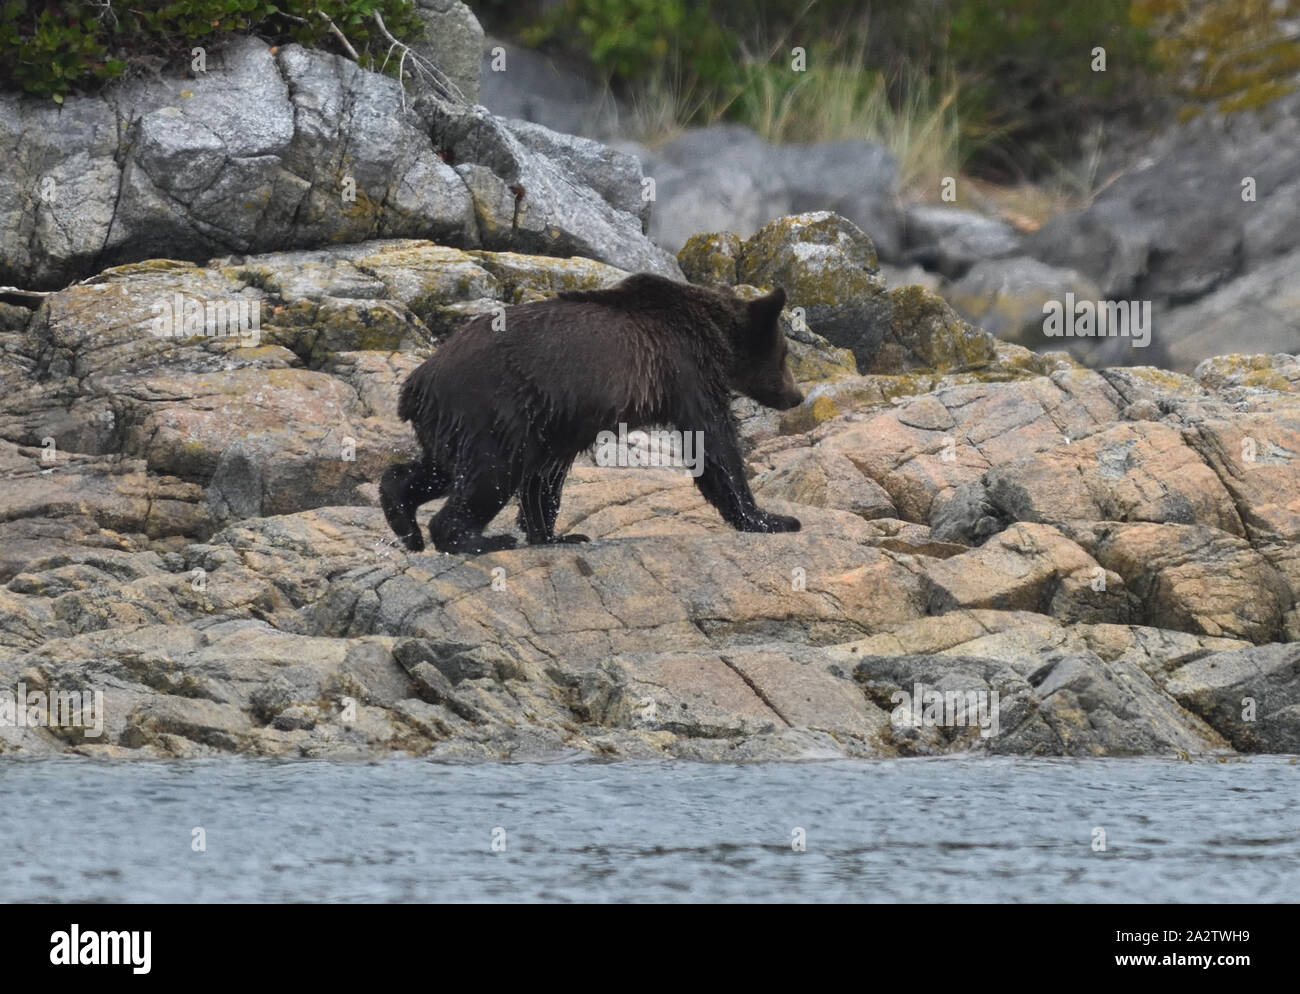 Un jeune ours grizzly (Ursus arctos), serre l'eau de son manteau après la baignade à une île pour se nourrir de baies. Port McNeil, British Columbia, Canada. Banque D'Images